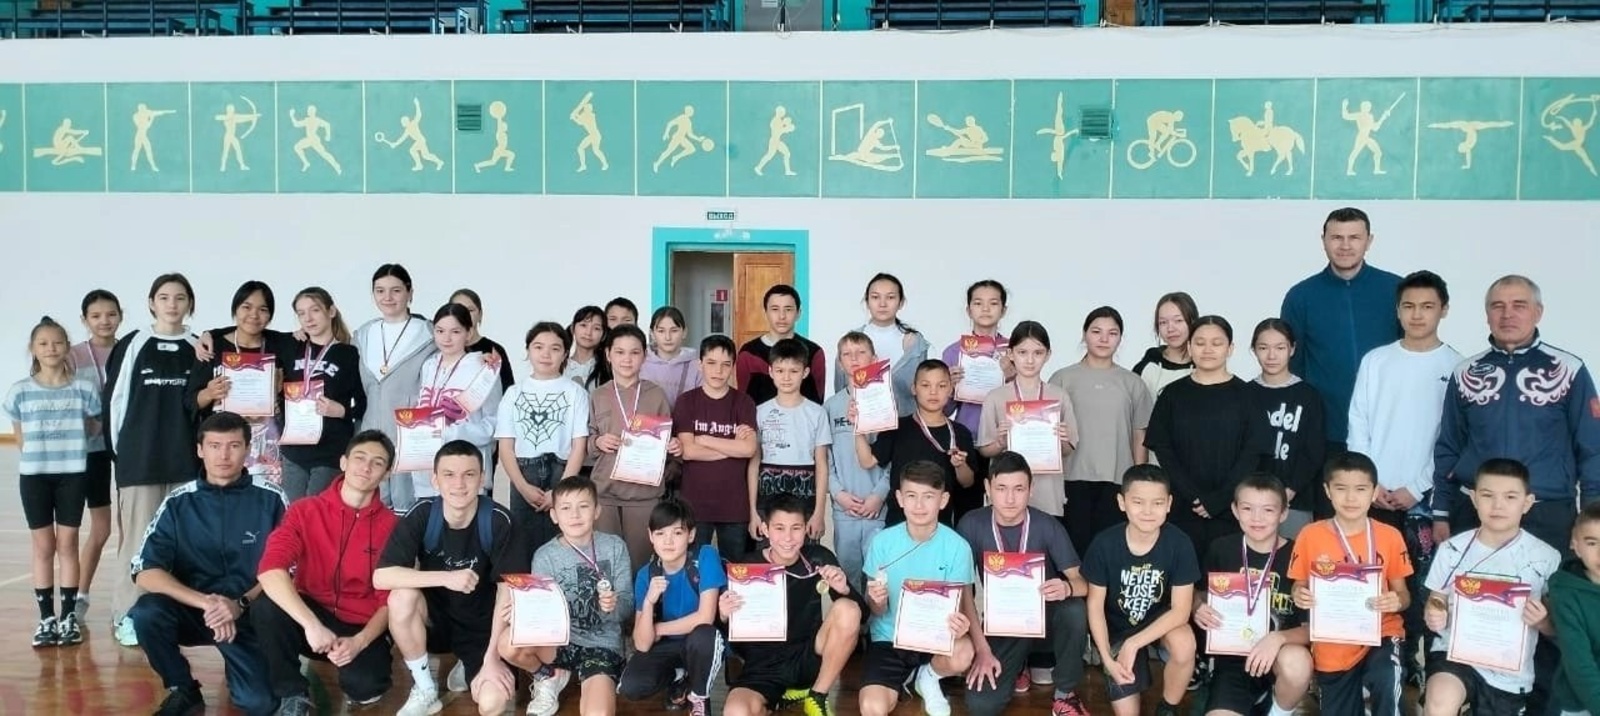 В Акьяре прошли личное первенство Хайбуллинского района по лёгкой атлетике и приём нормативов ГТО среди юношей и девушек